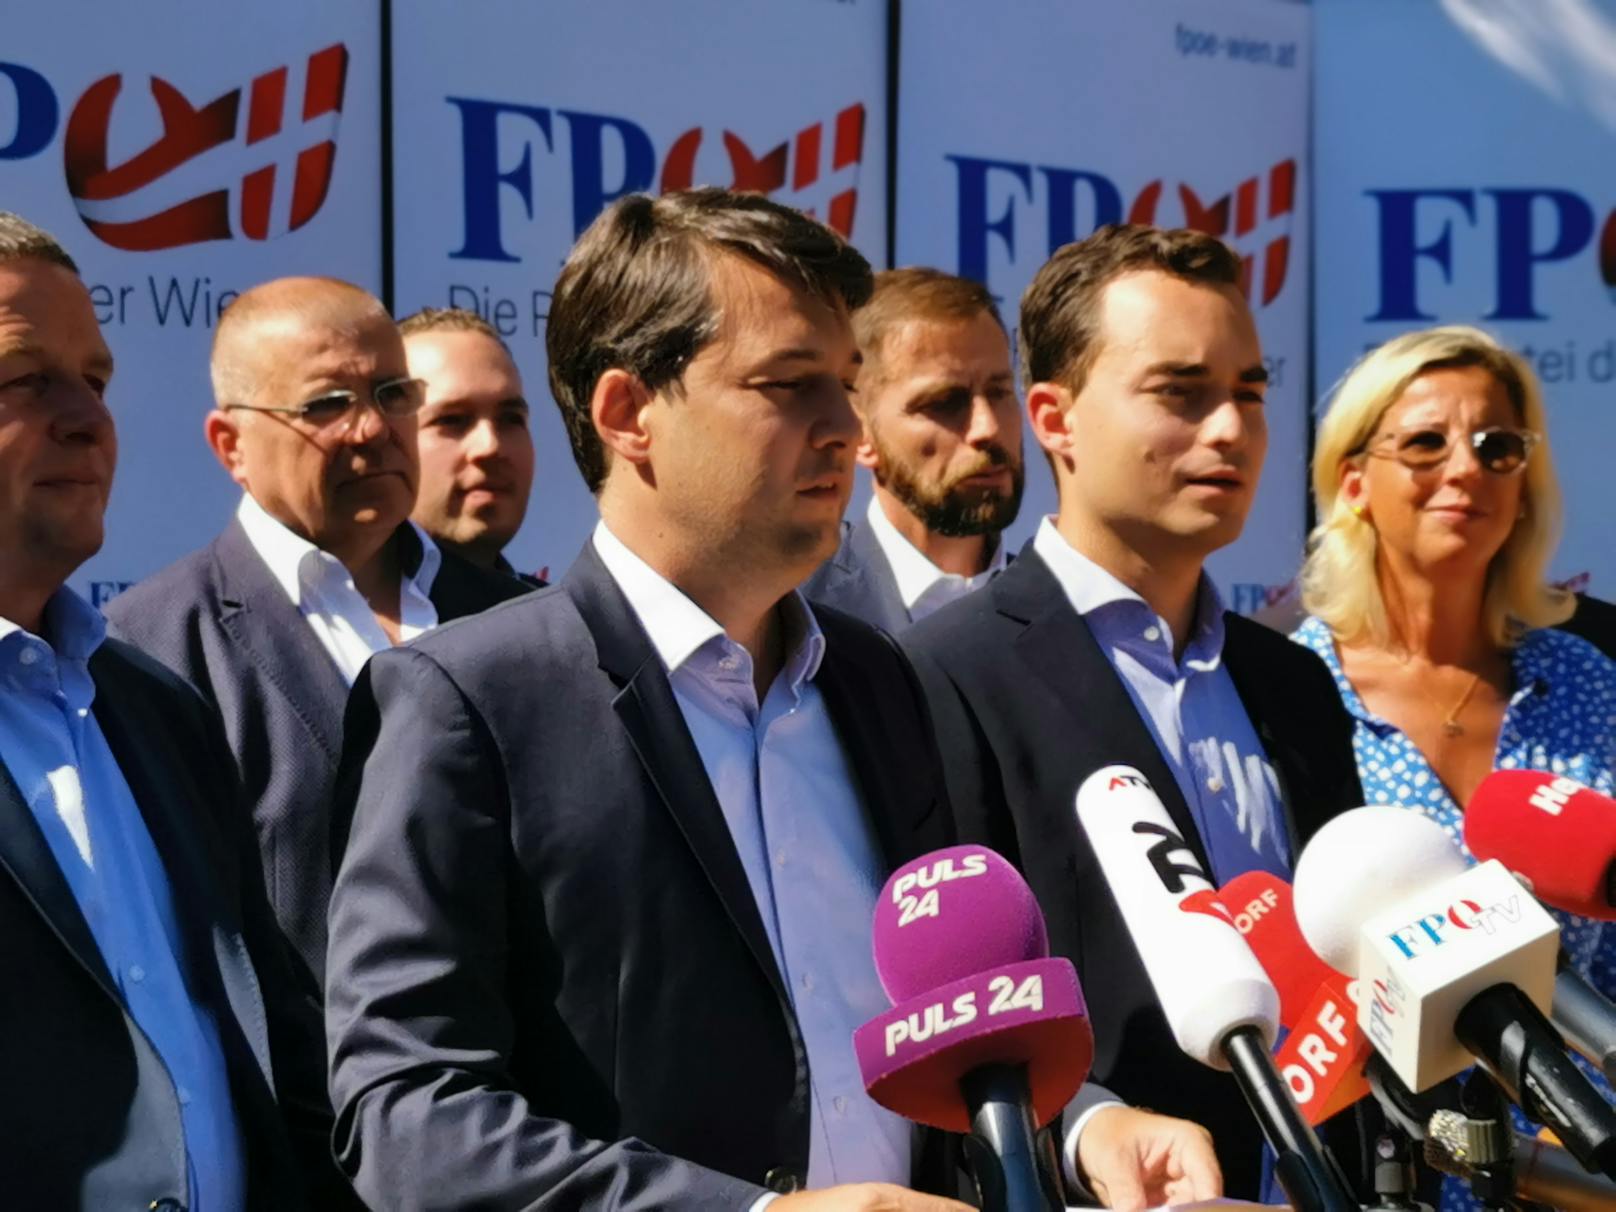 FP Wien stellt ihre Kandidaten für Wien-Wahl vor (12. August 2020)